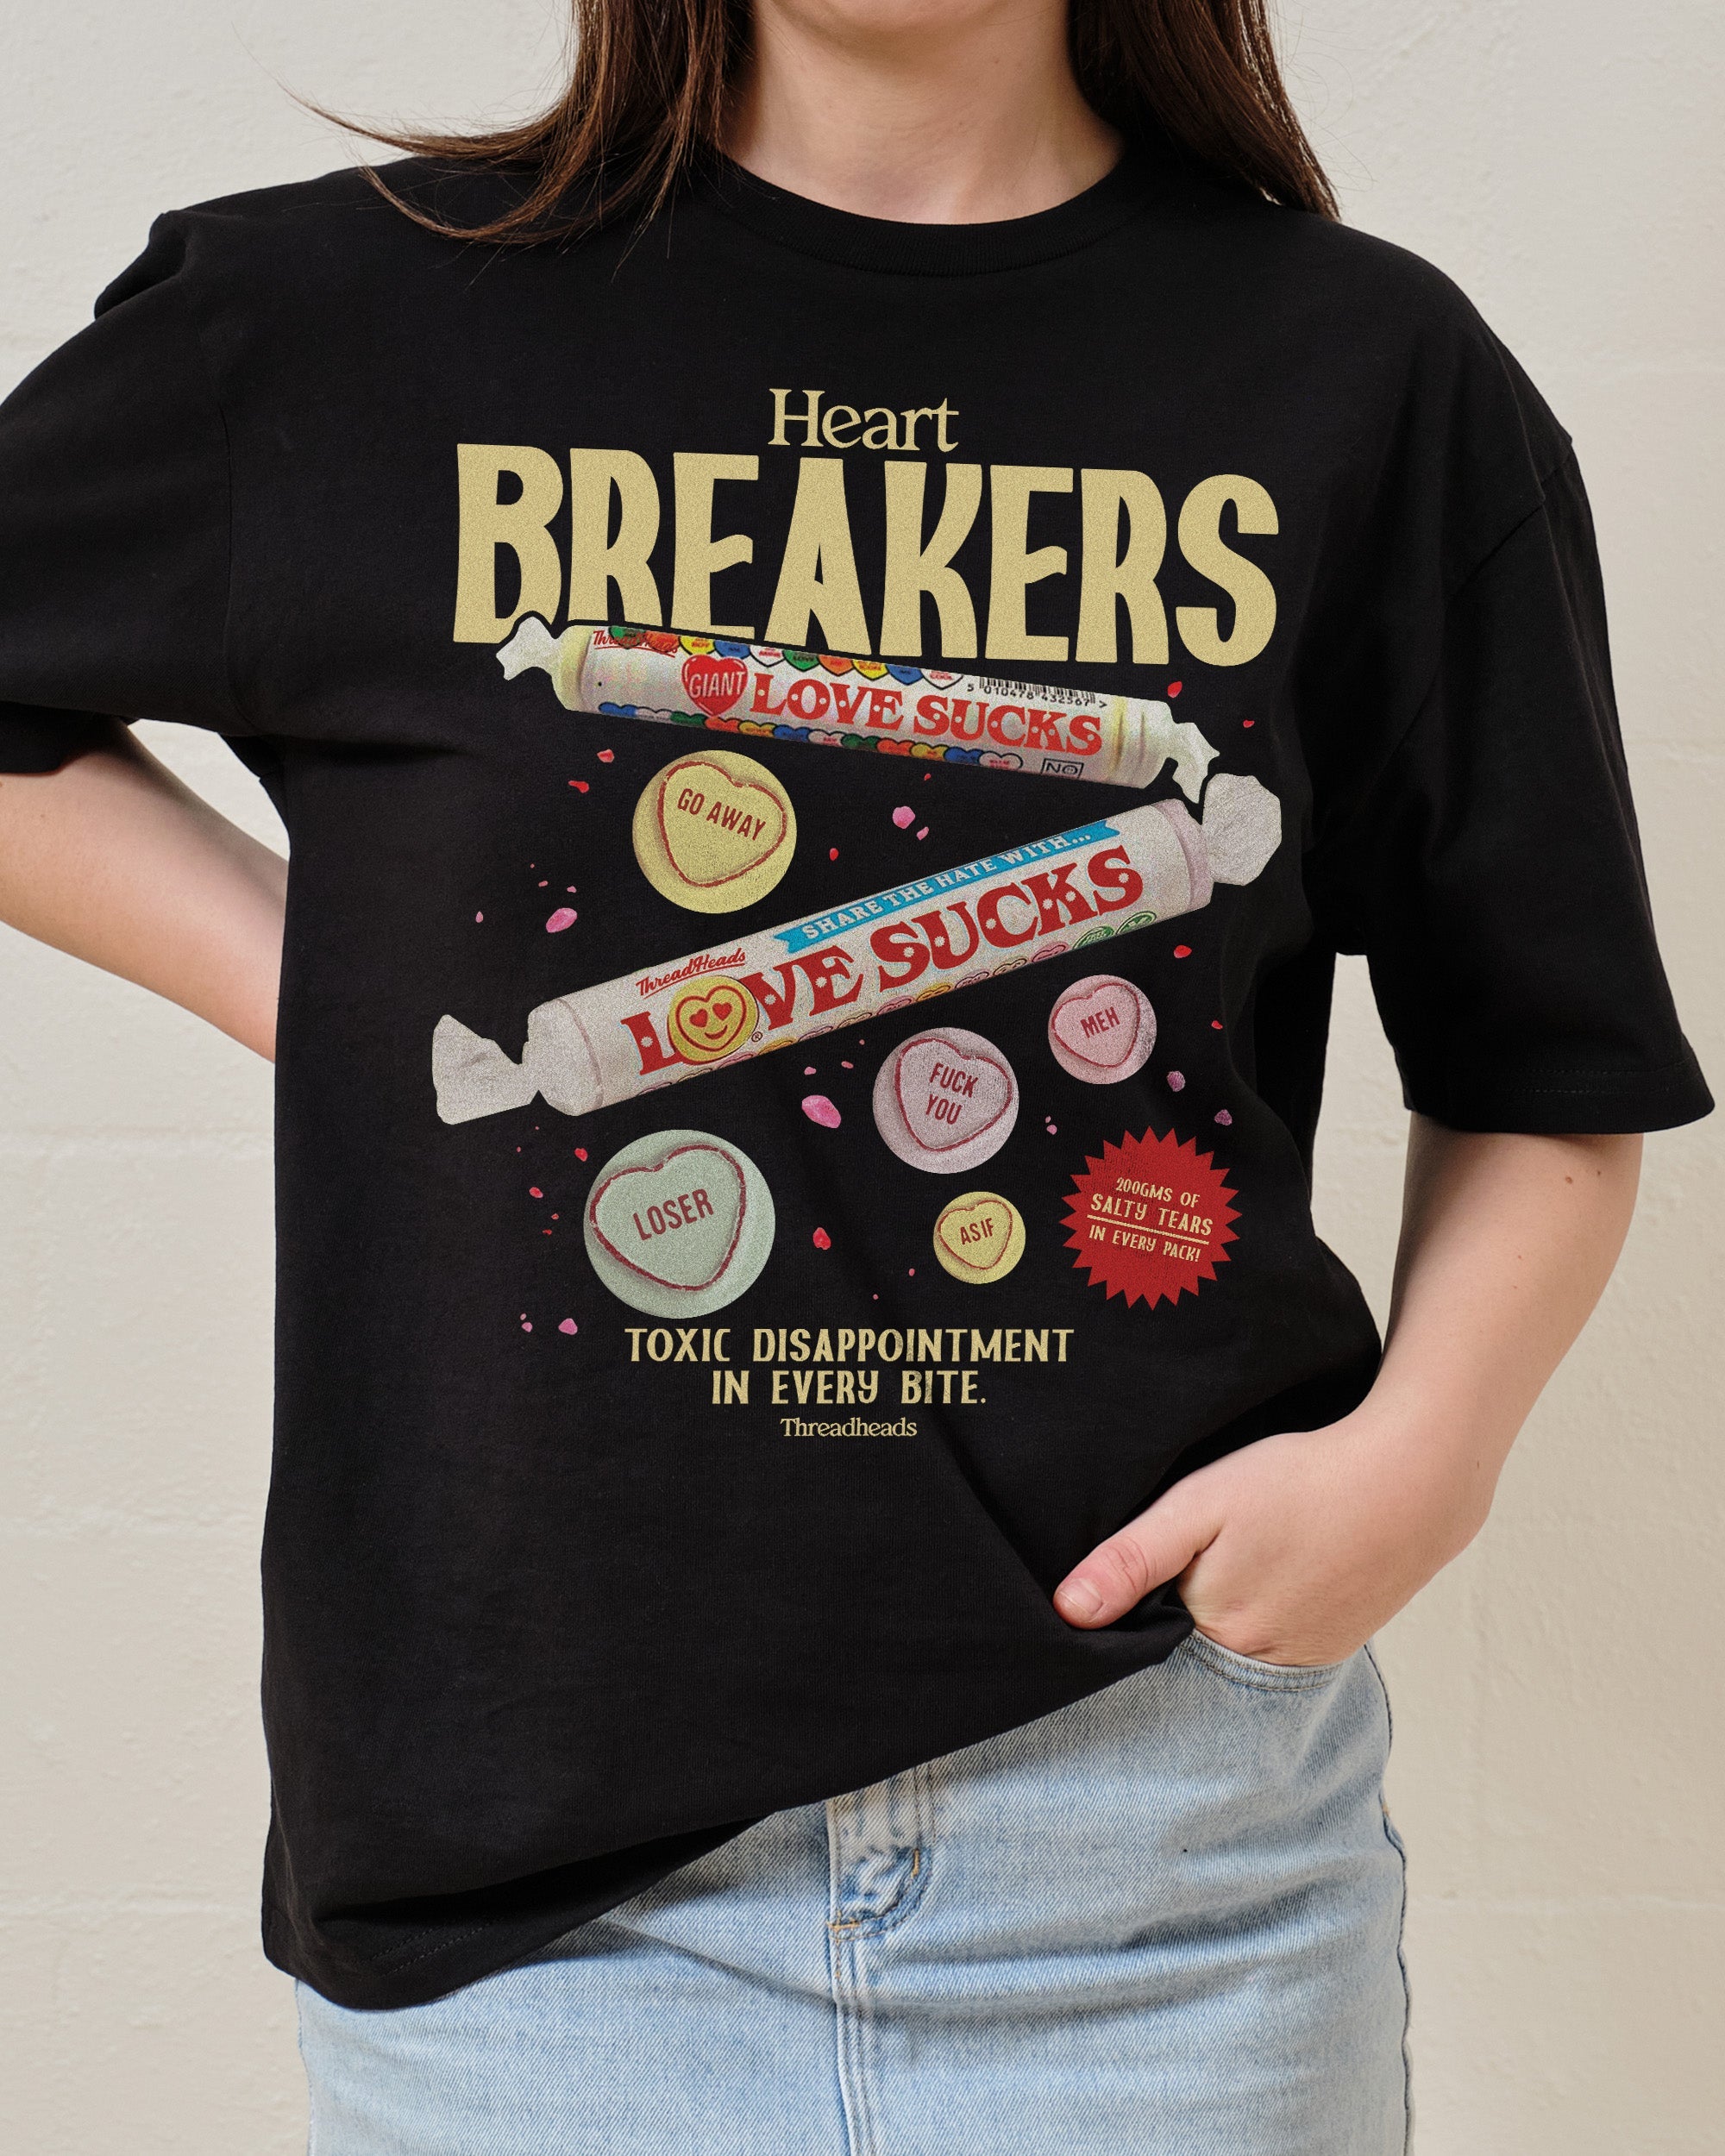 Heart Breakers T-Shirt Australia Online Black